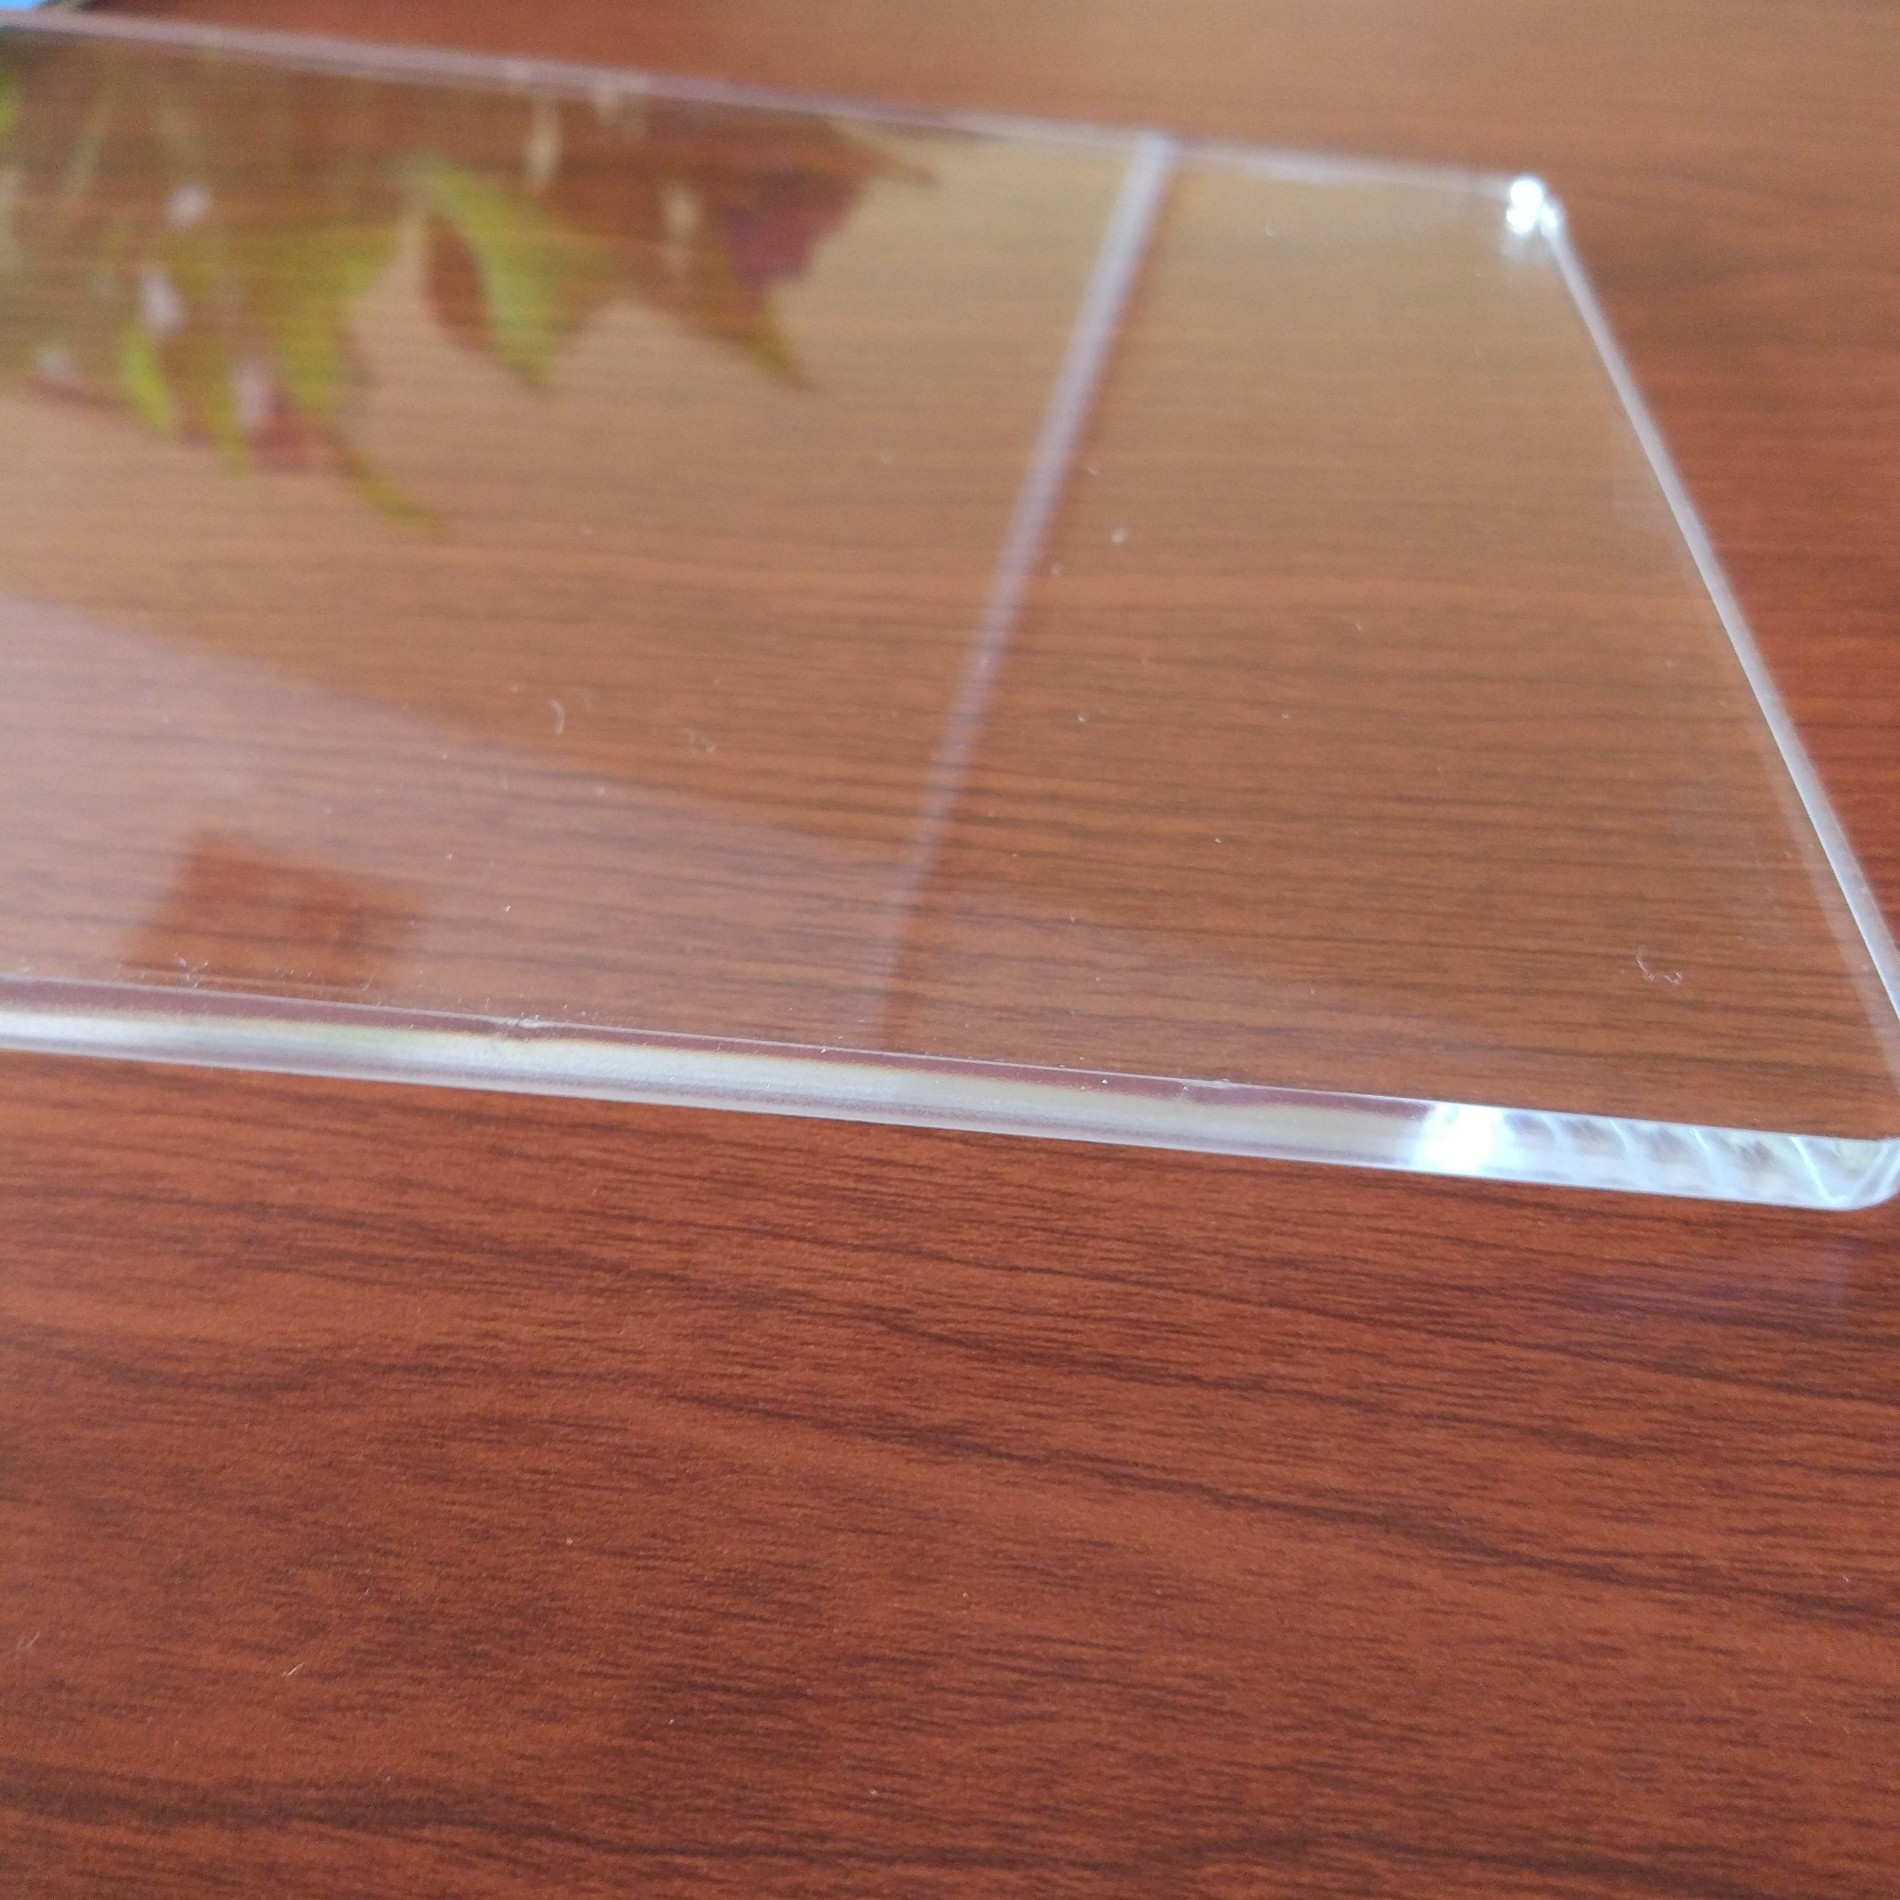 Comprar tablero de acrílico vidrio acrílico lámina de plástico de vidrio plexi, tablero de acrílico vidrio acrílico lámina de plástico de vidrio plexi Precios, tablero de acrílico vidrio acrílico lámina de plástico de vidrio plexi Marcas, tablero de acrílico vidrio acrílico lámina de plástico de vidrio plexi Fabricante, tablero de acrílico vidrio acrílico lámina de plástico de vidrio plexi Citas, tablero de acrílico vidrio acrílico lámina de plástico de vidrio plexi Empresa.